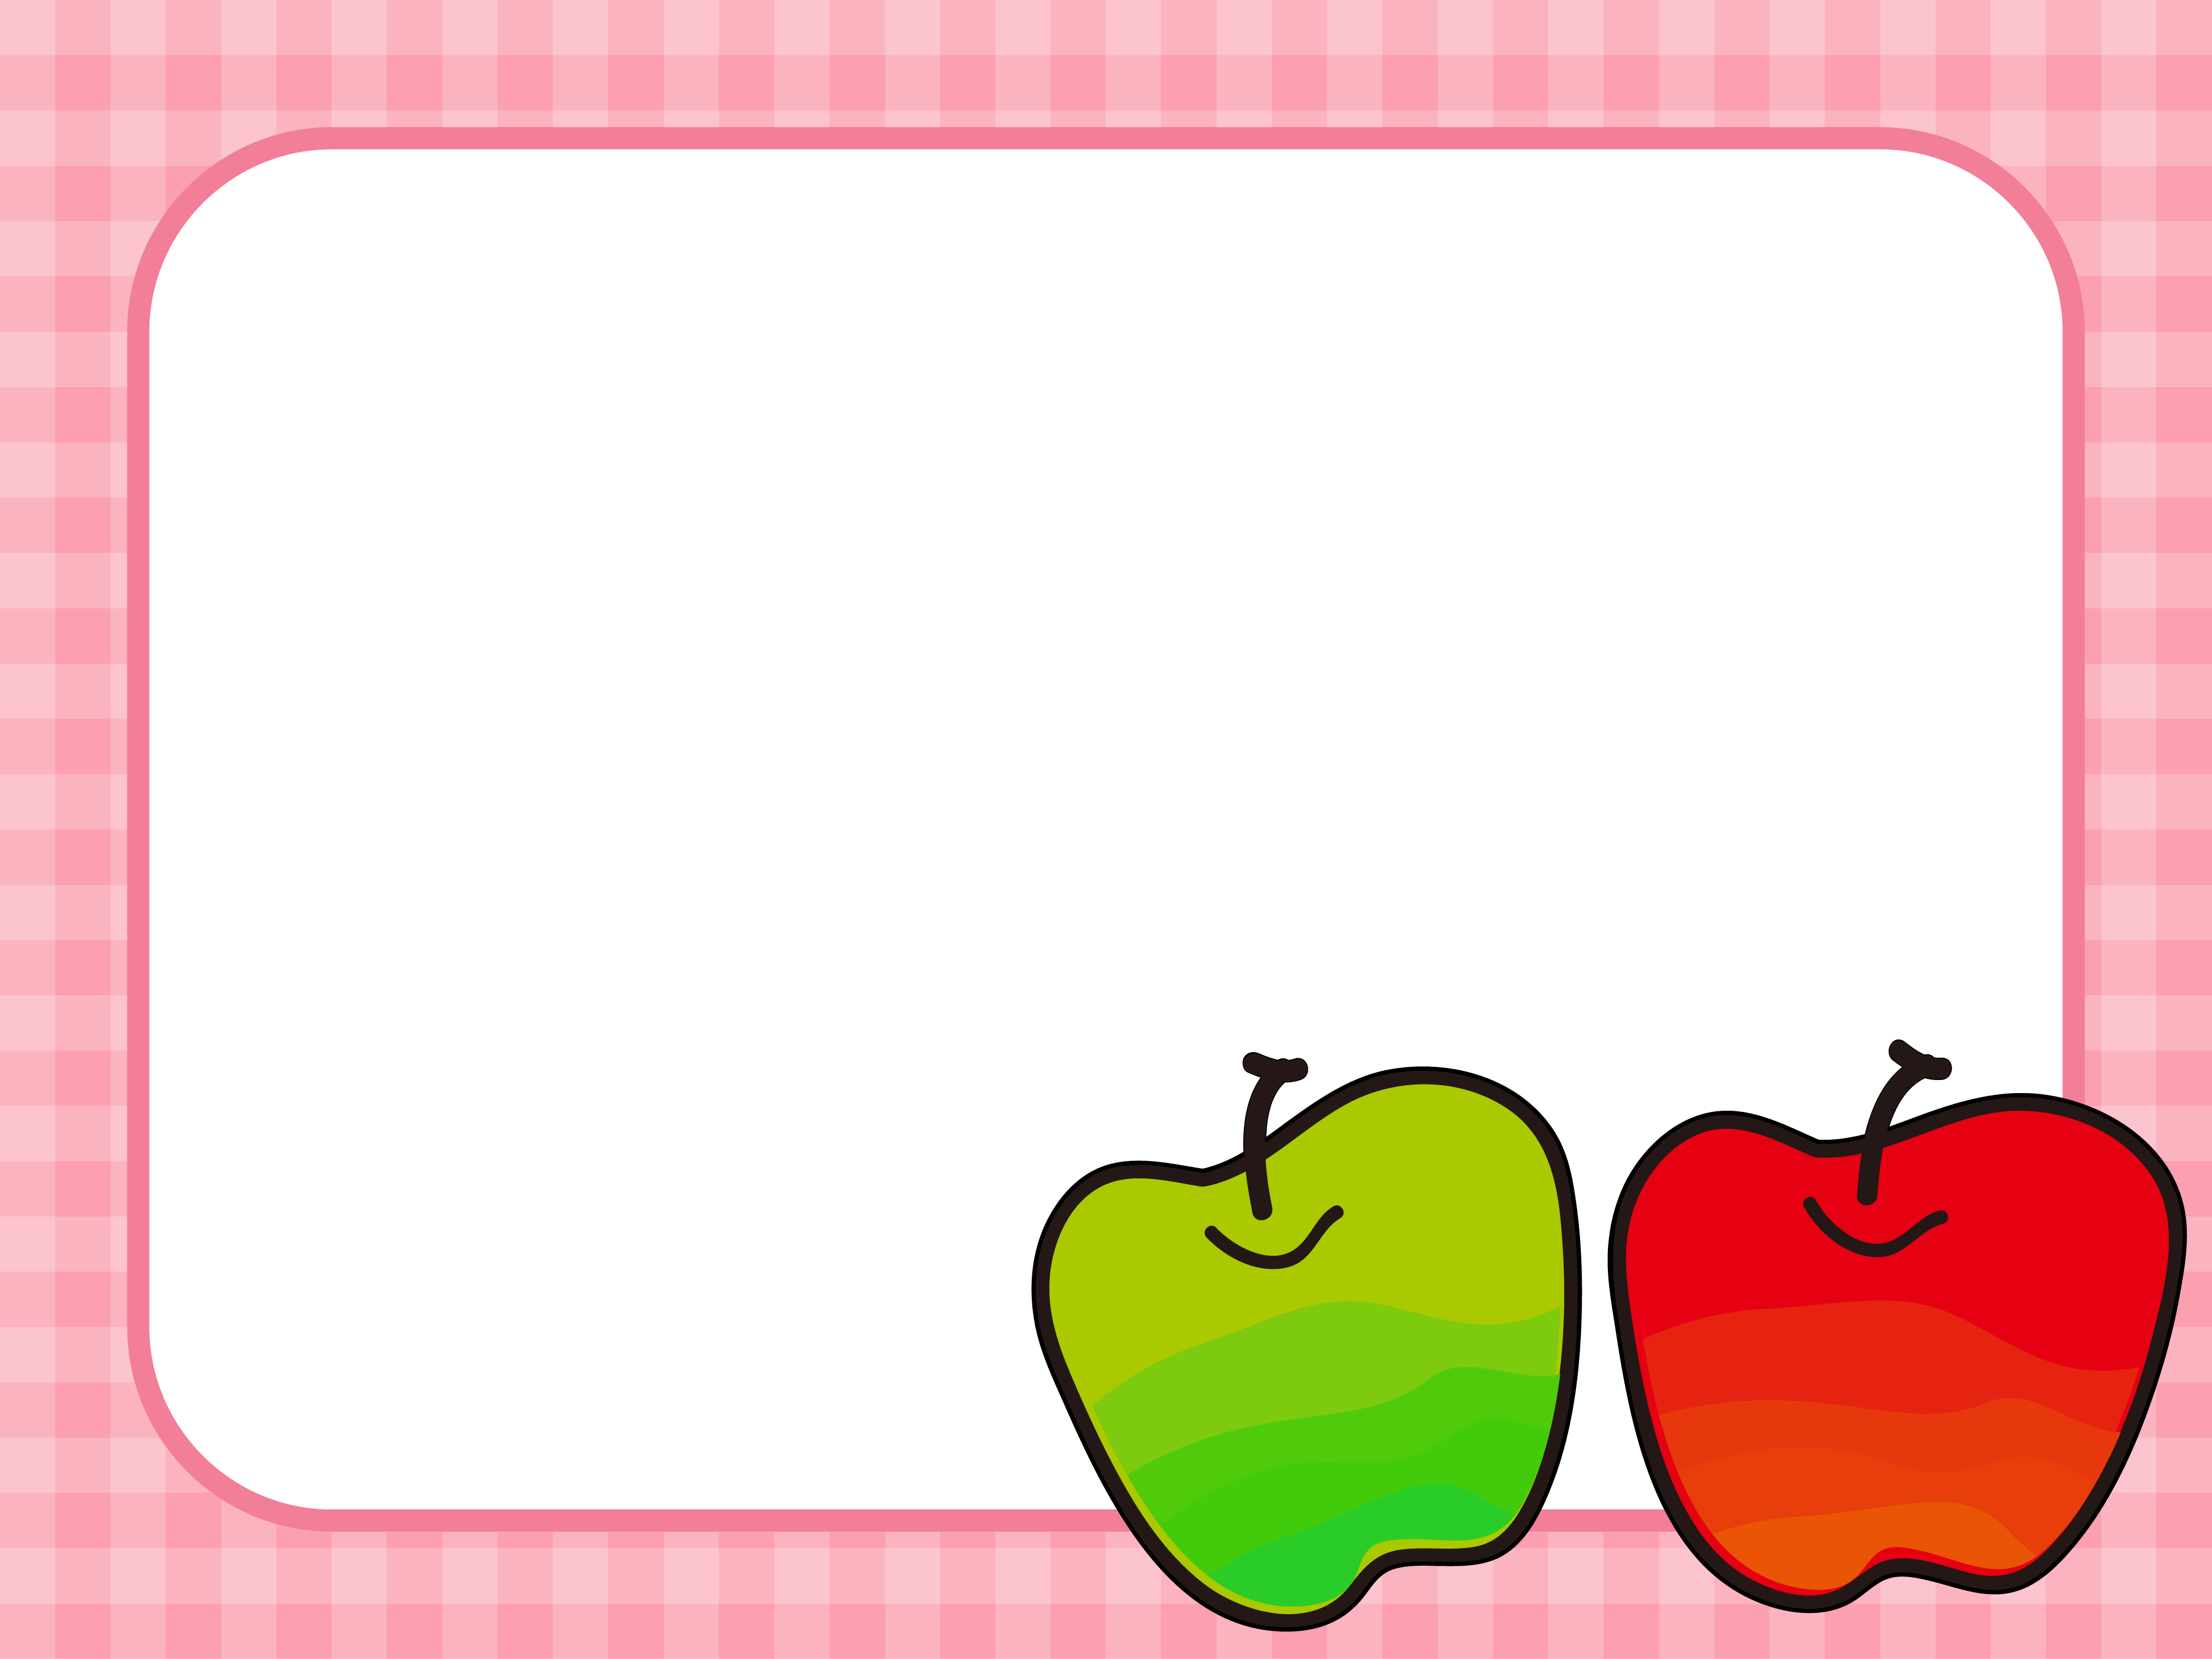 两个苹果的装饰框